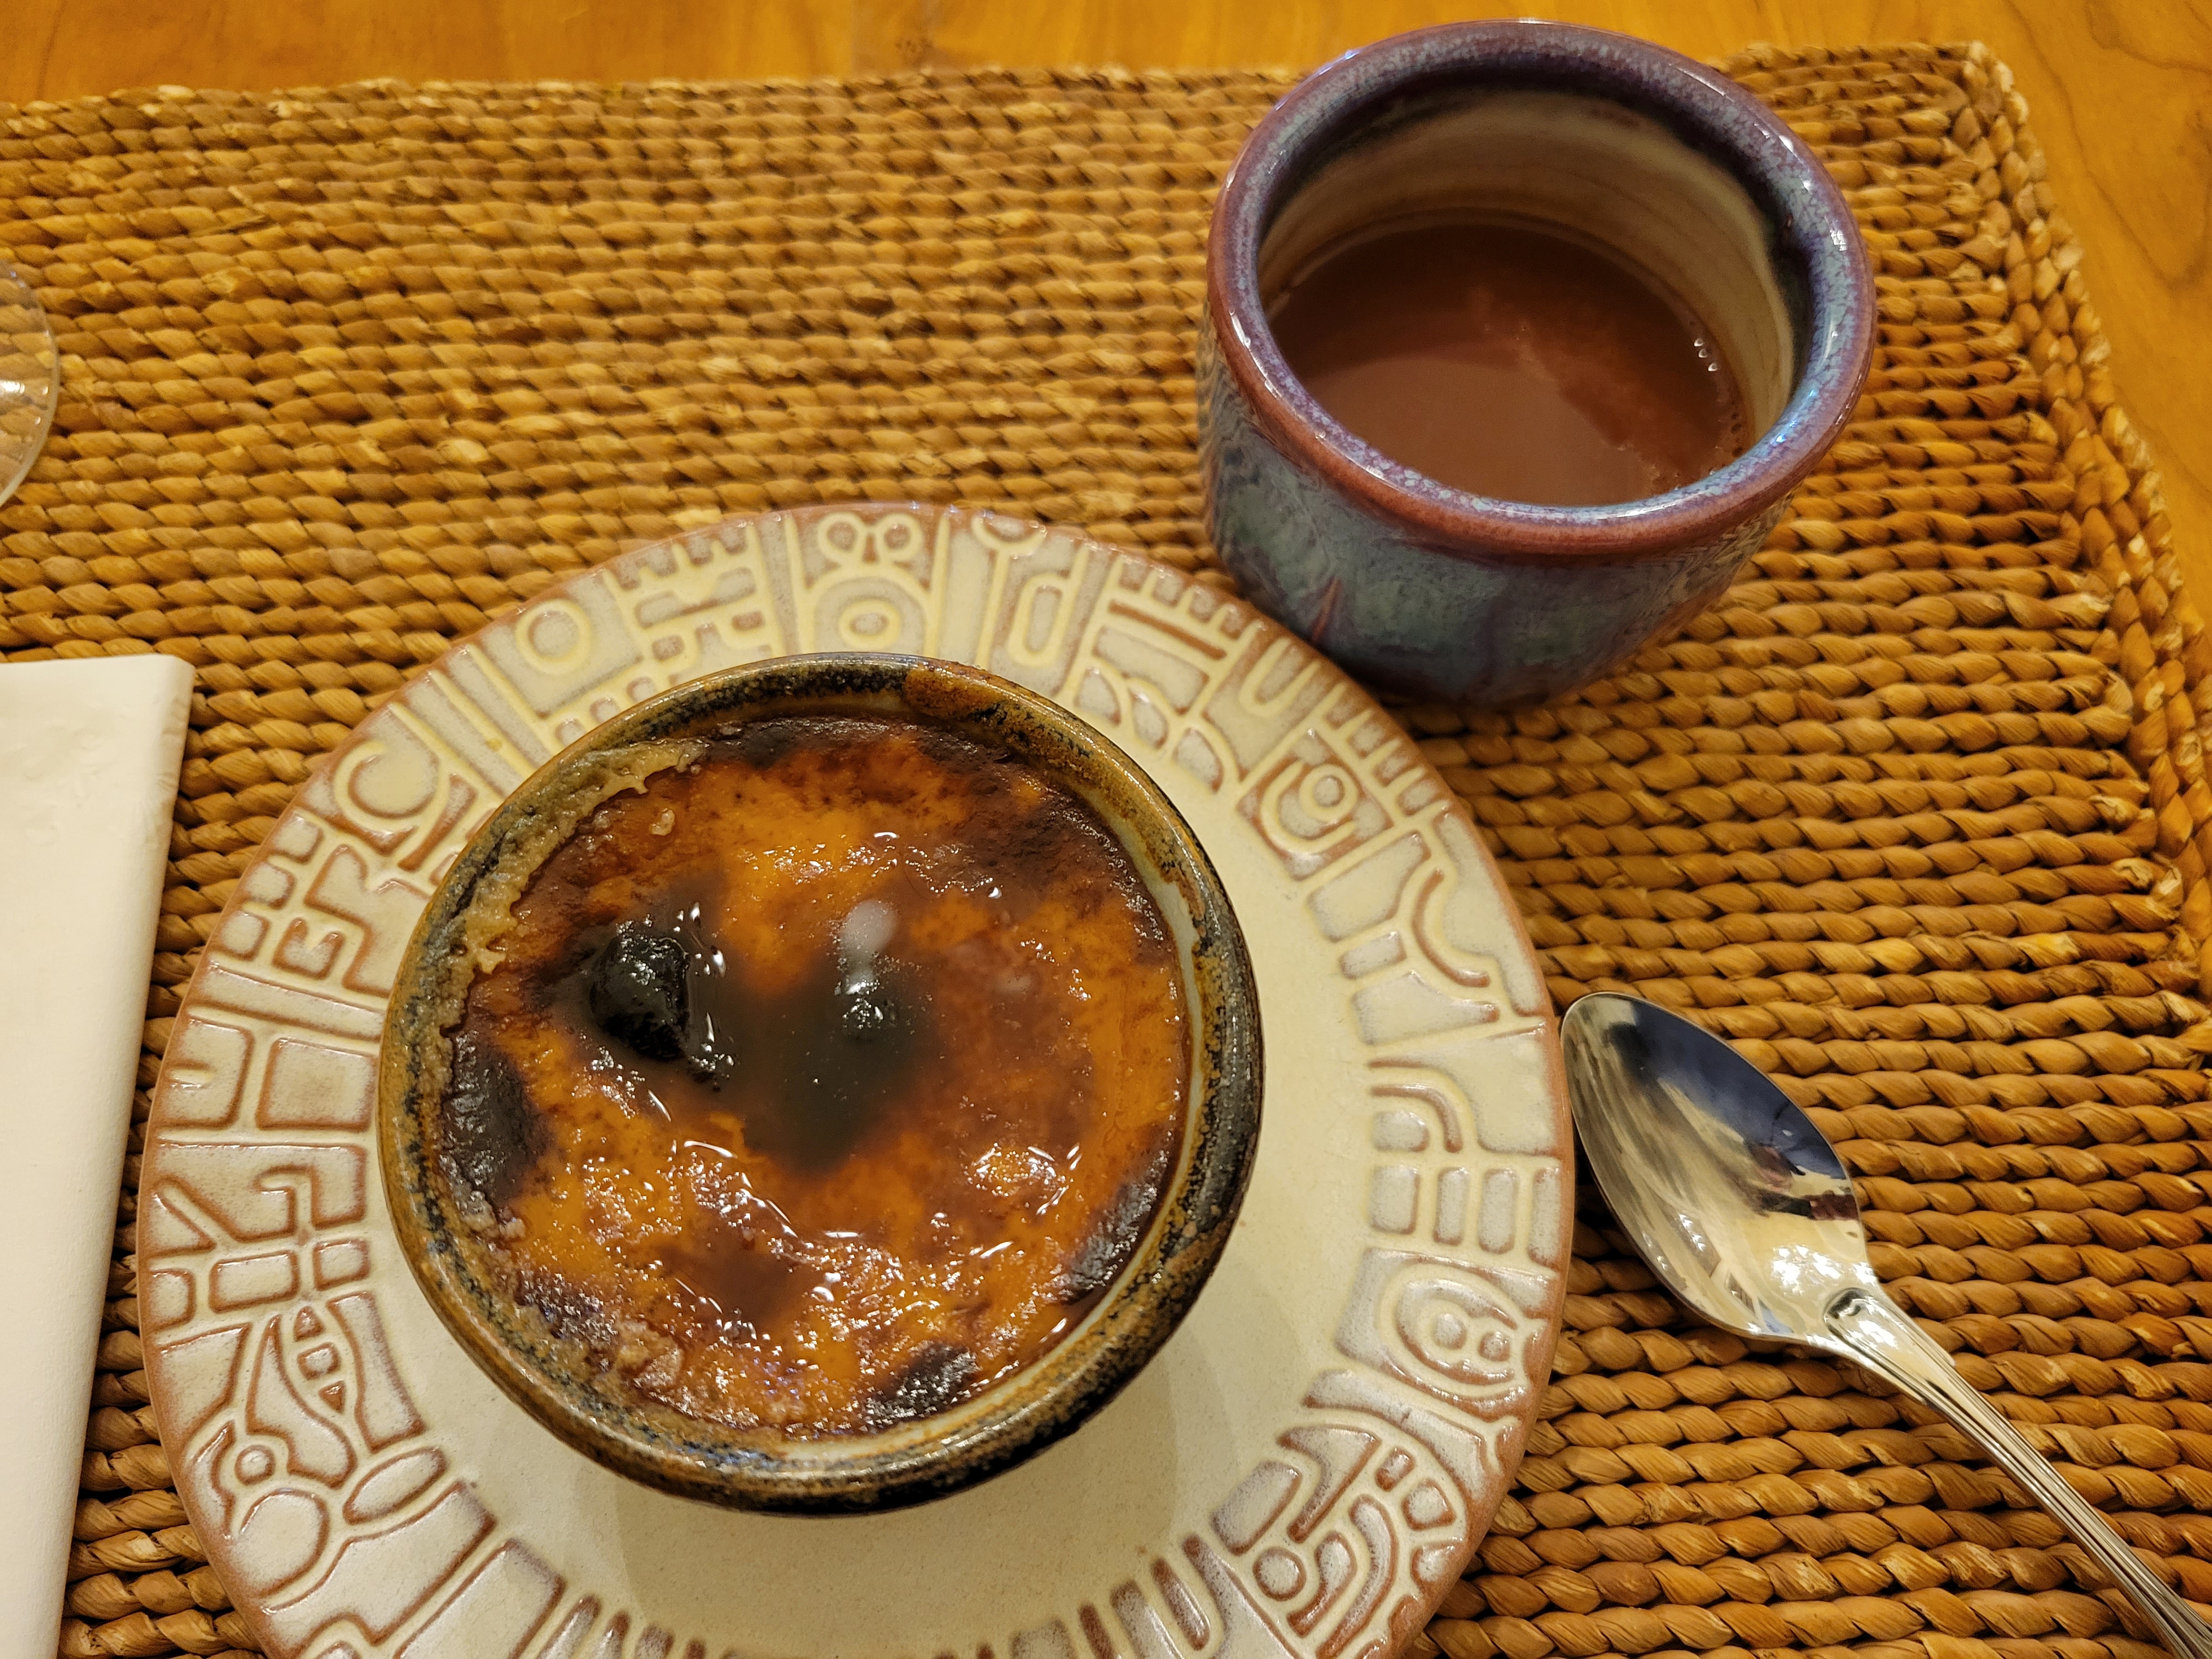 a small ramekin of cajeta custard, next to a ceramic teacup with hot chocolate